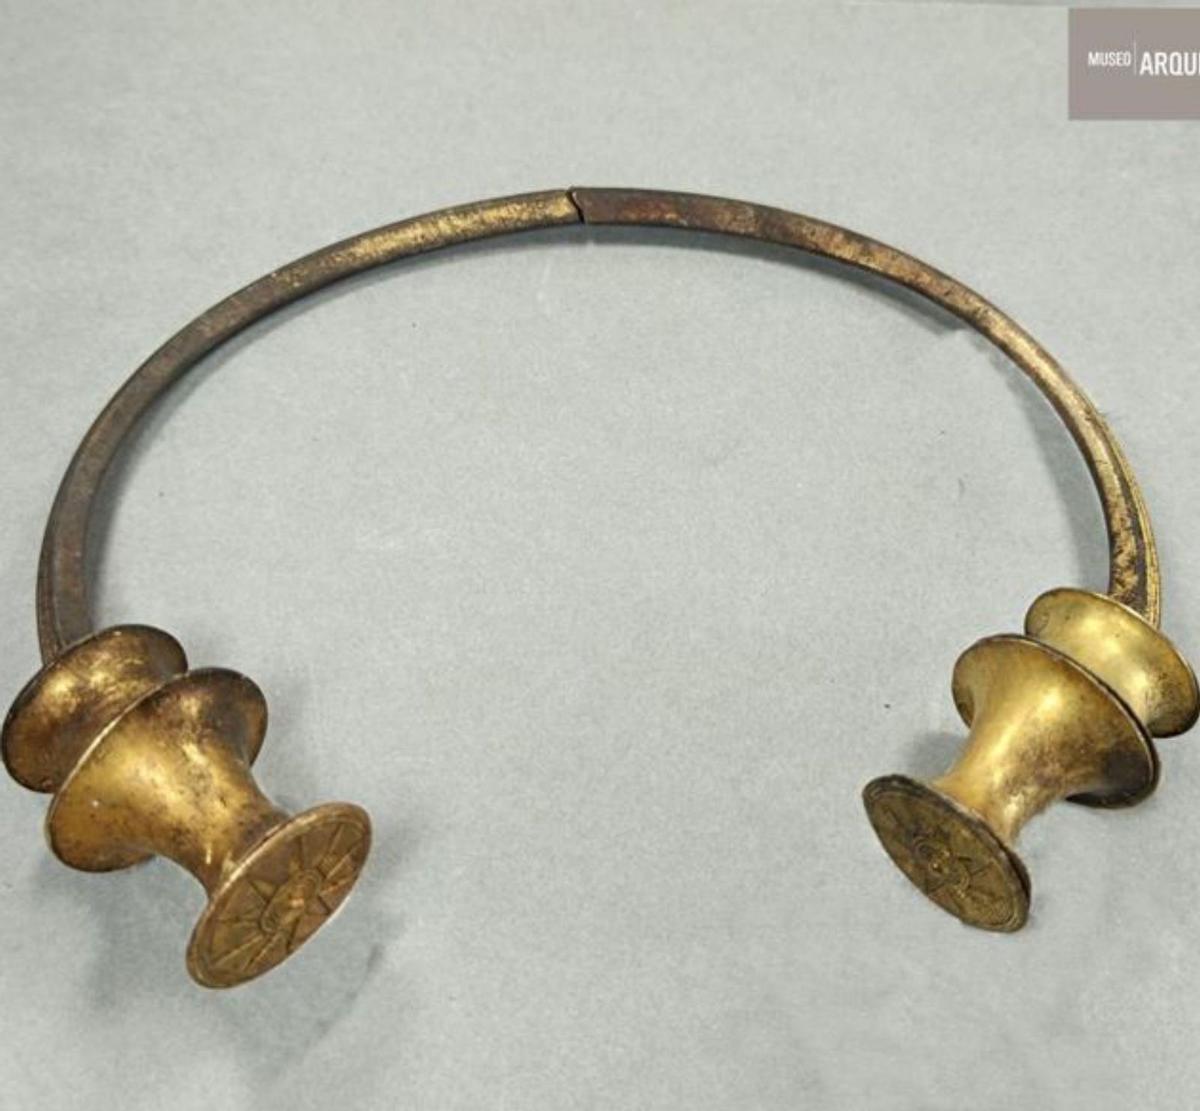 Hallan dos valiosas piezas de orfebrería de la Edad del Hierro en Cavandi (Peñamellera Baja)